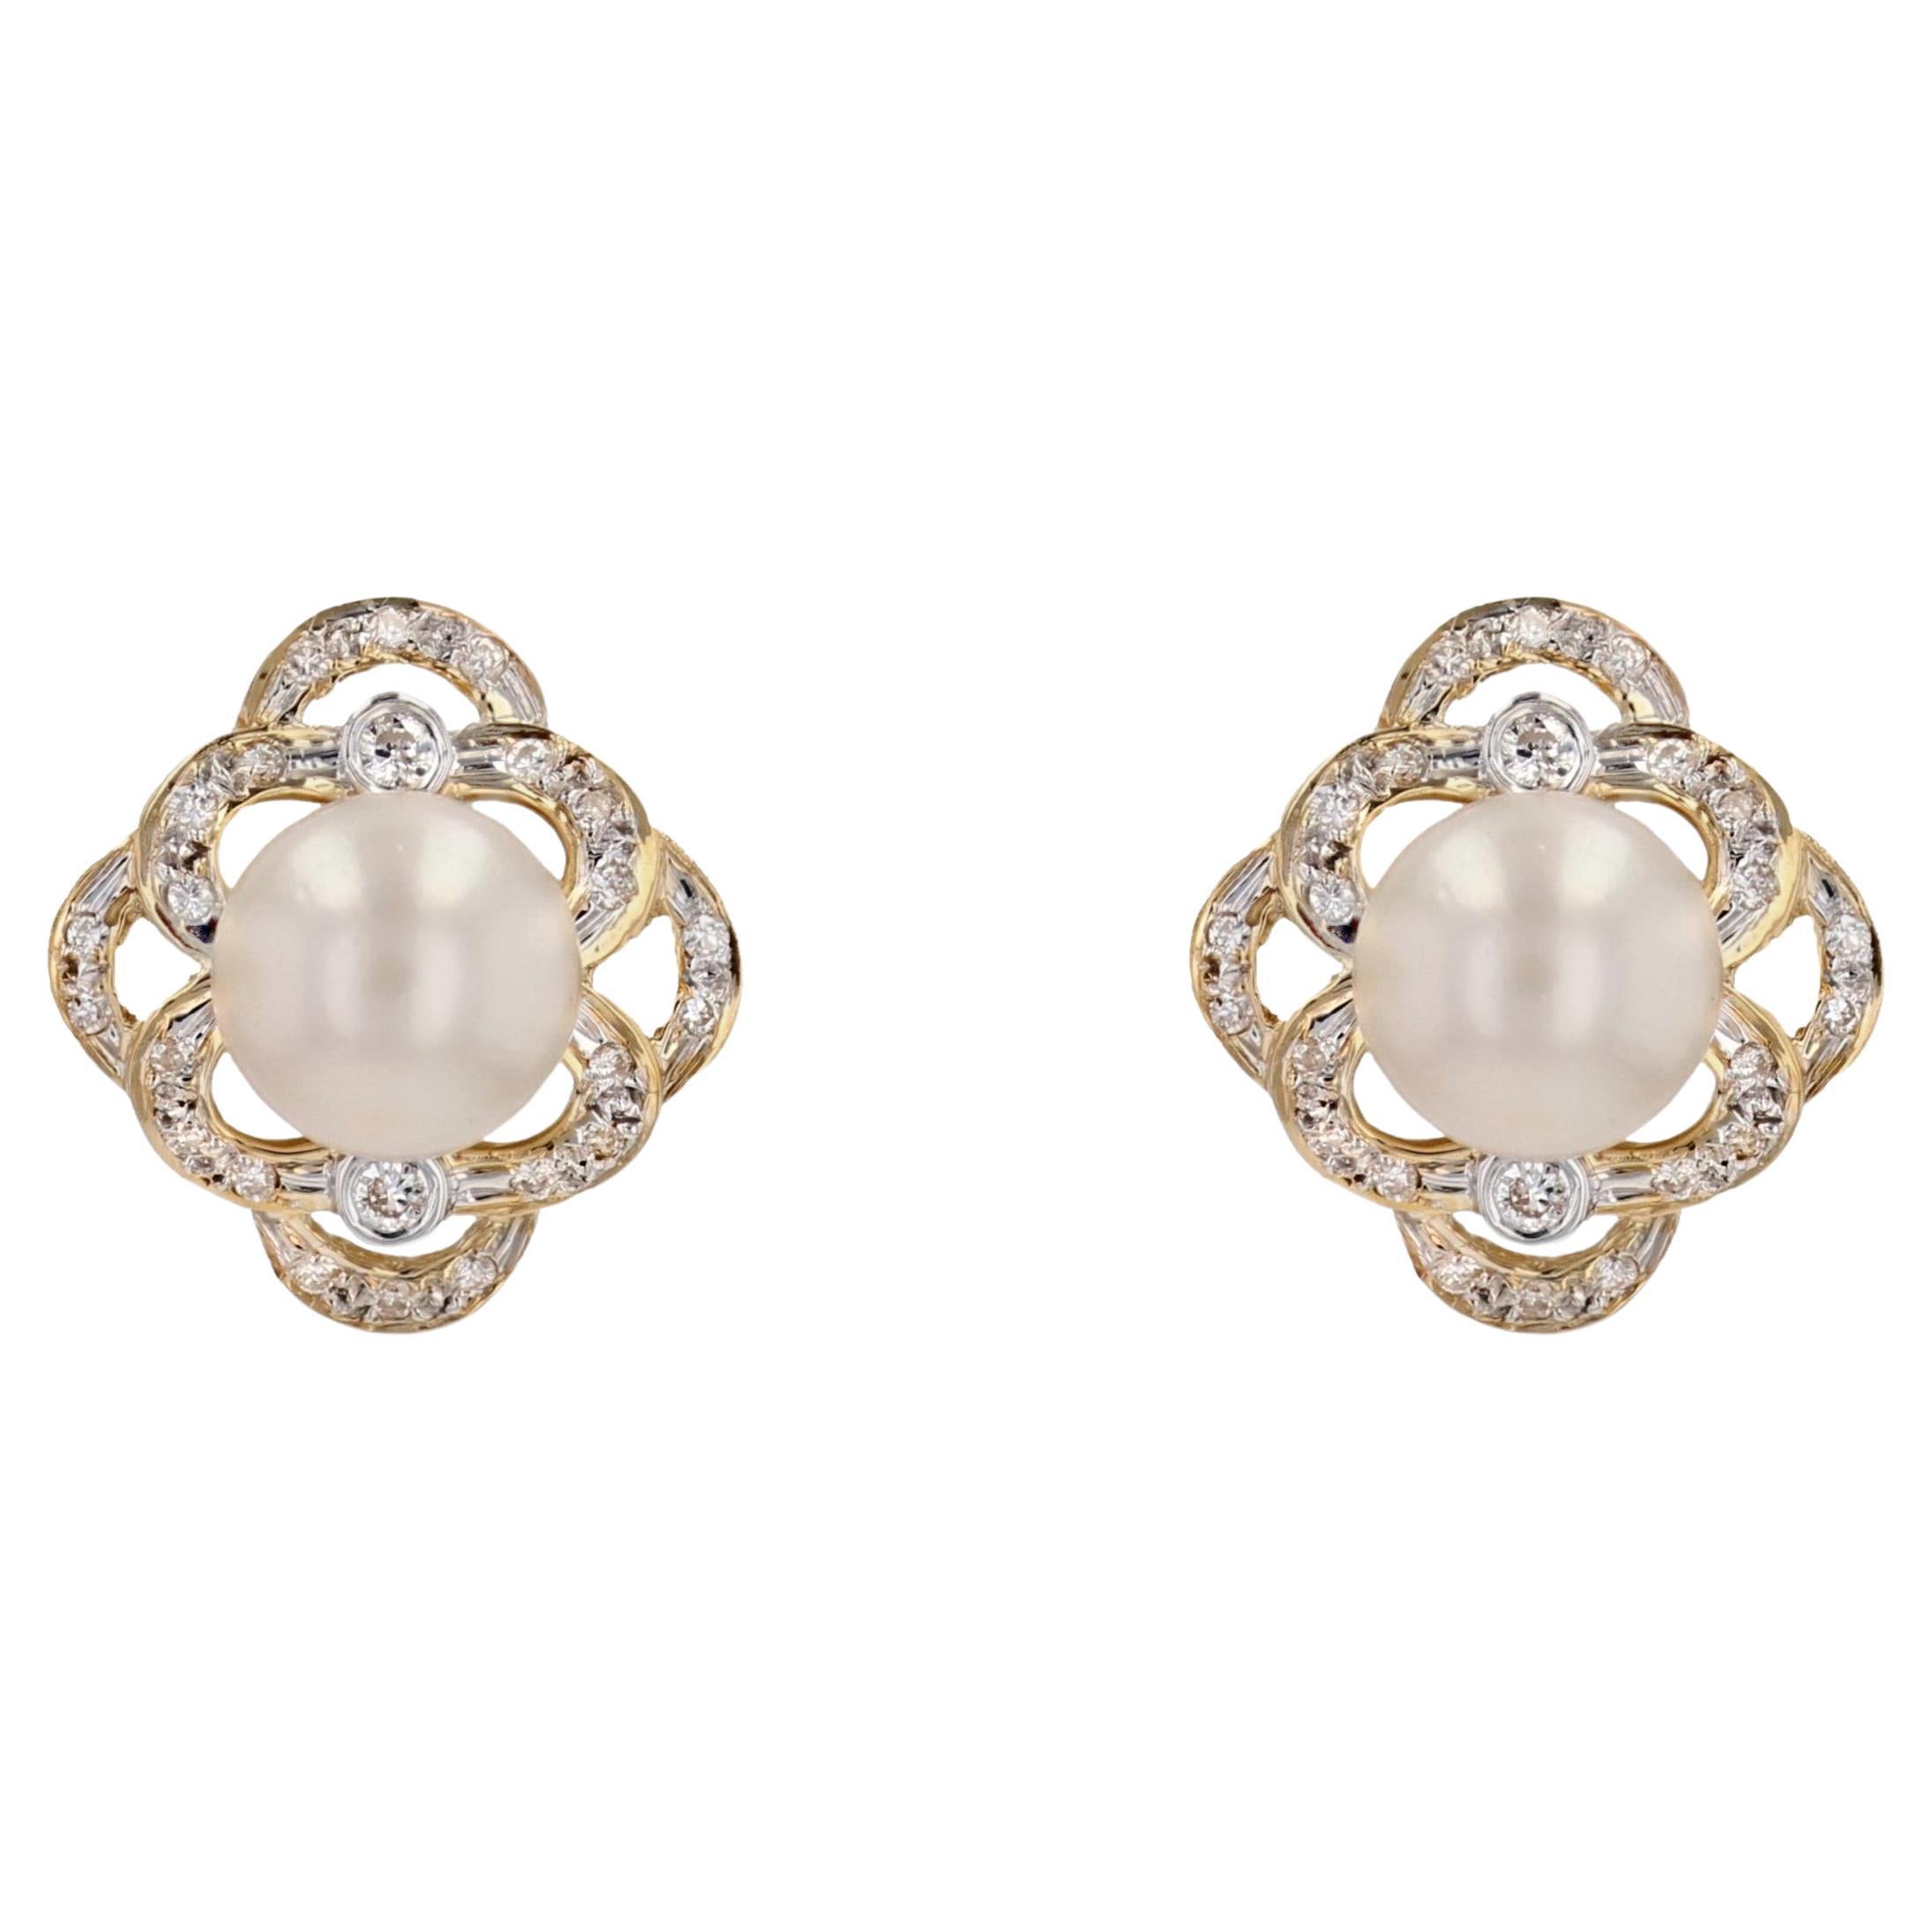 Clous d'oreilles modernes ajourés en or jaune 18 carats avec perles de culture Akoya et diamants